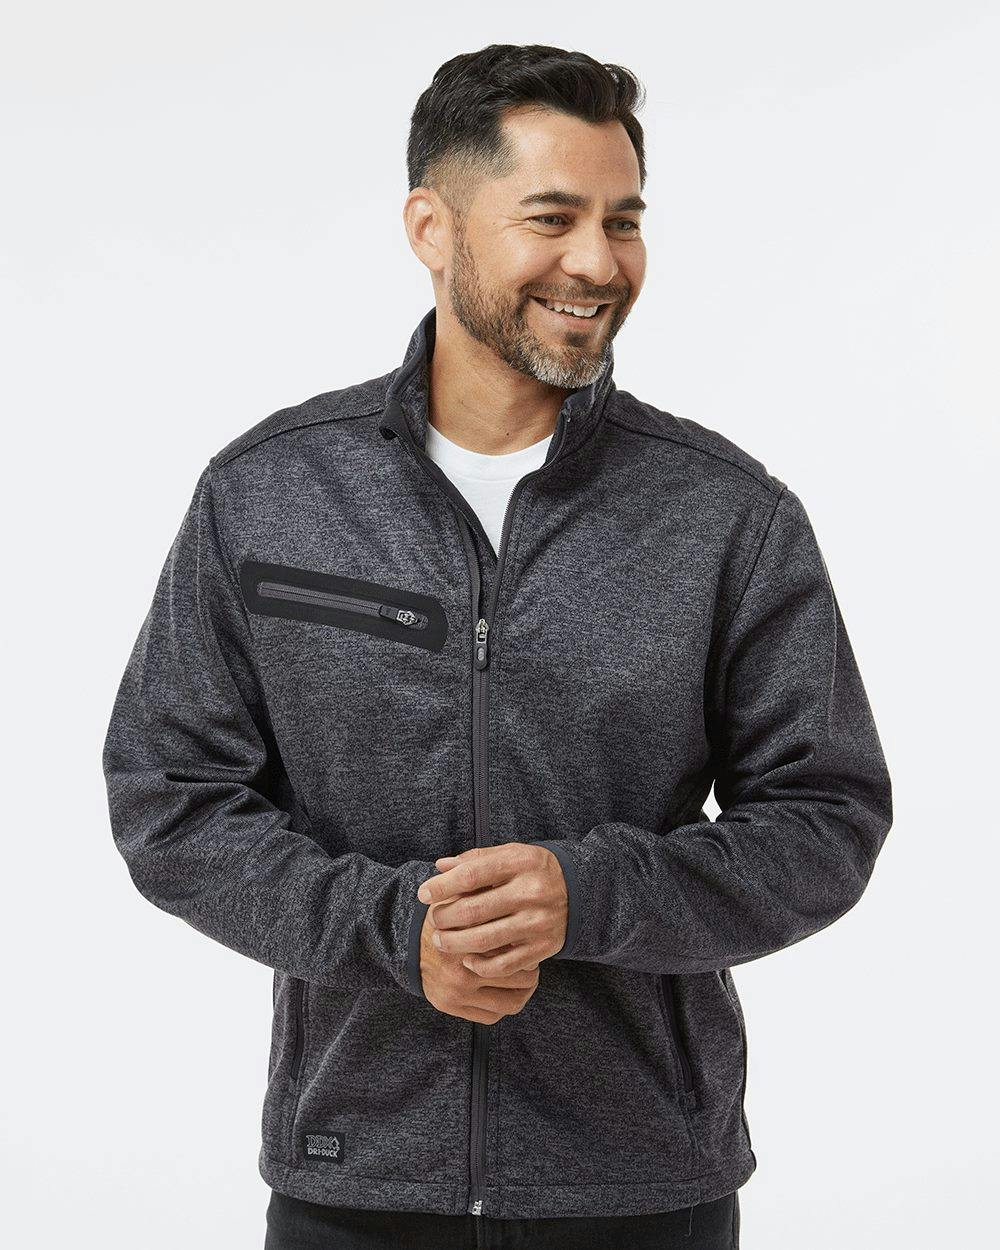 Image for Atlas Sweater Fleece Full-Zip Jacket - 5316